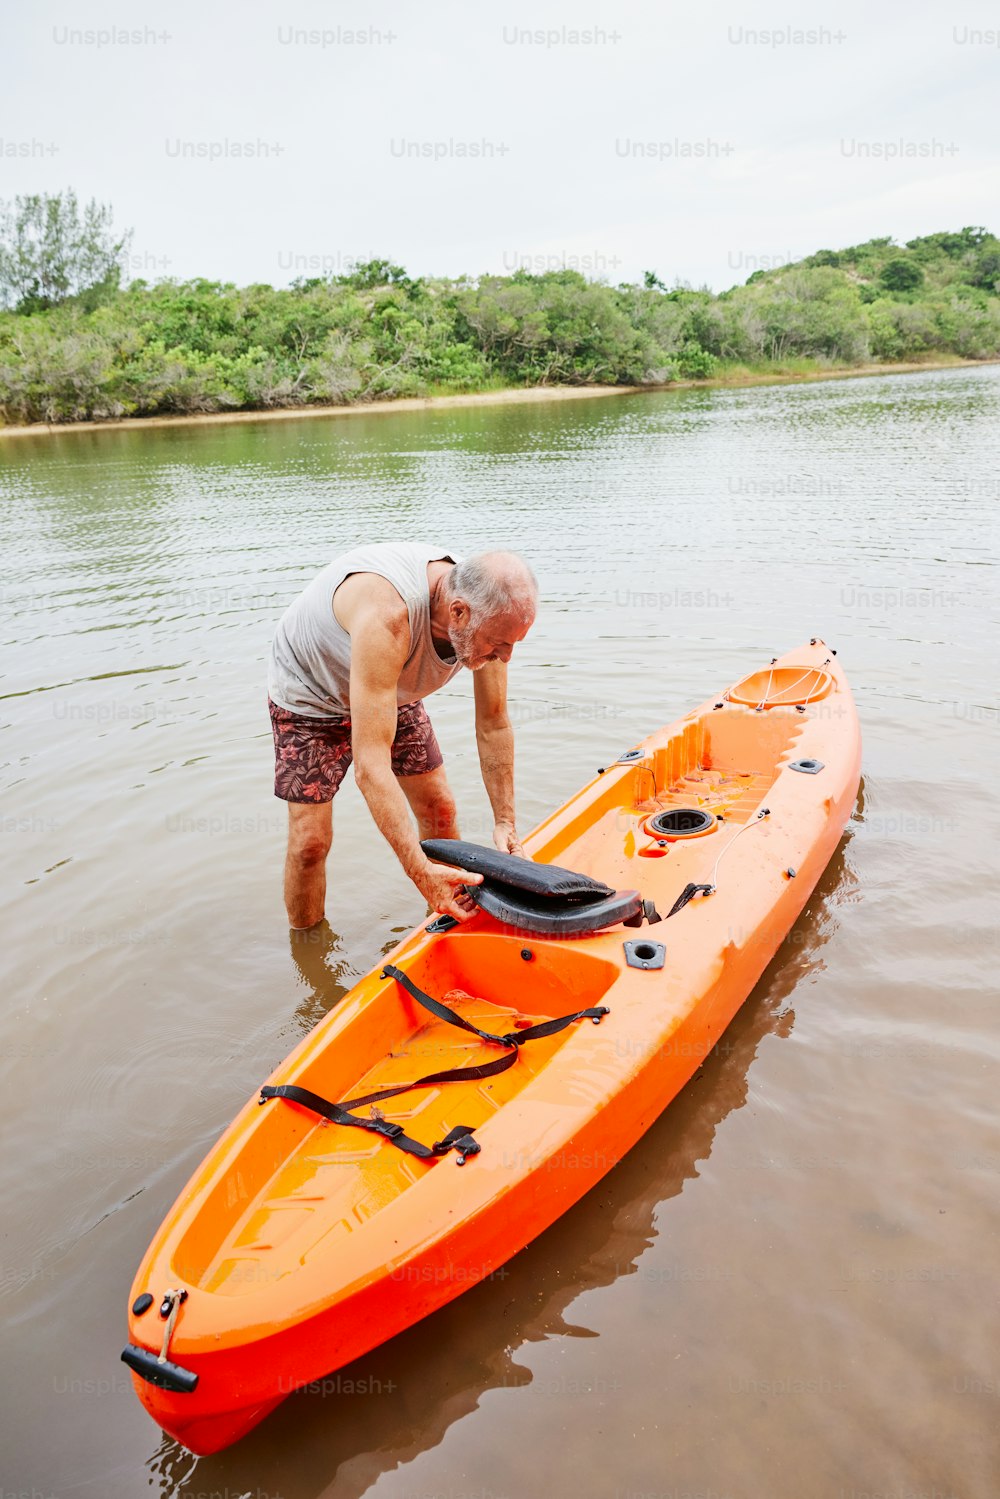 Un hombre parado en el agua junto a un kayak naranja